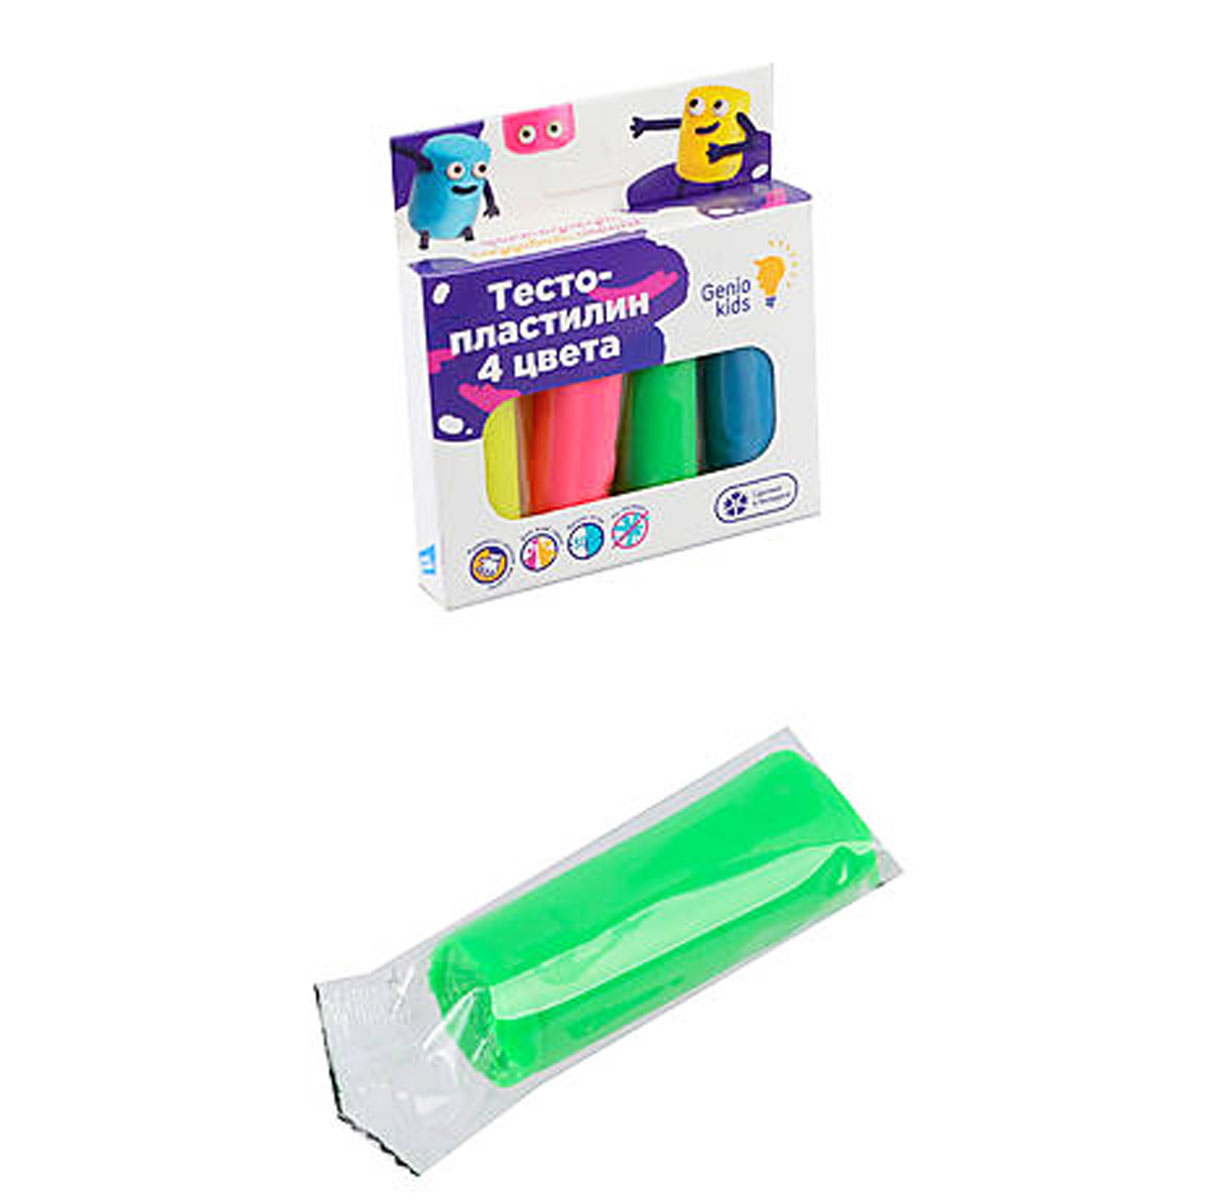 Набор для лепки Genio Kids 'Тесто-пластилин 4 цвета'